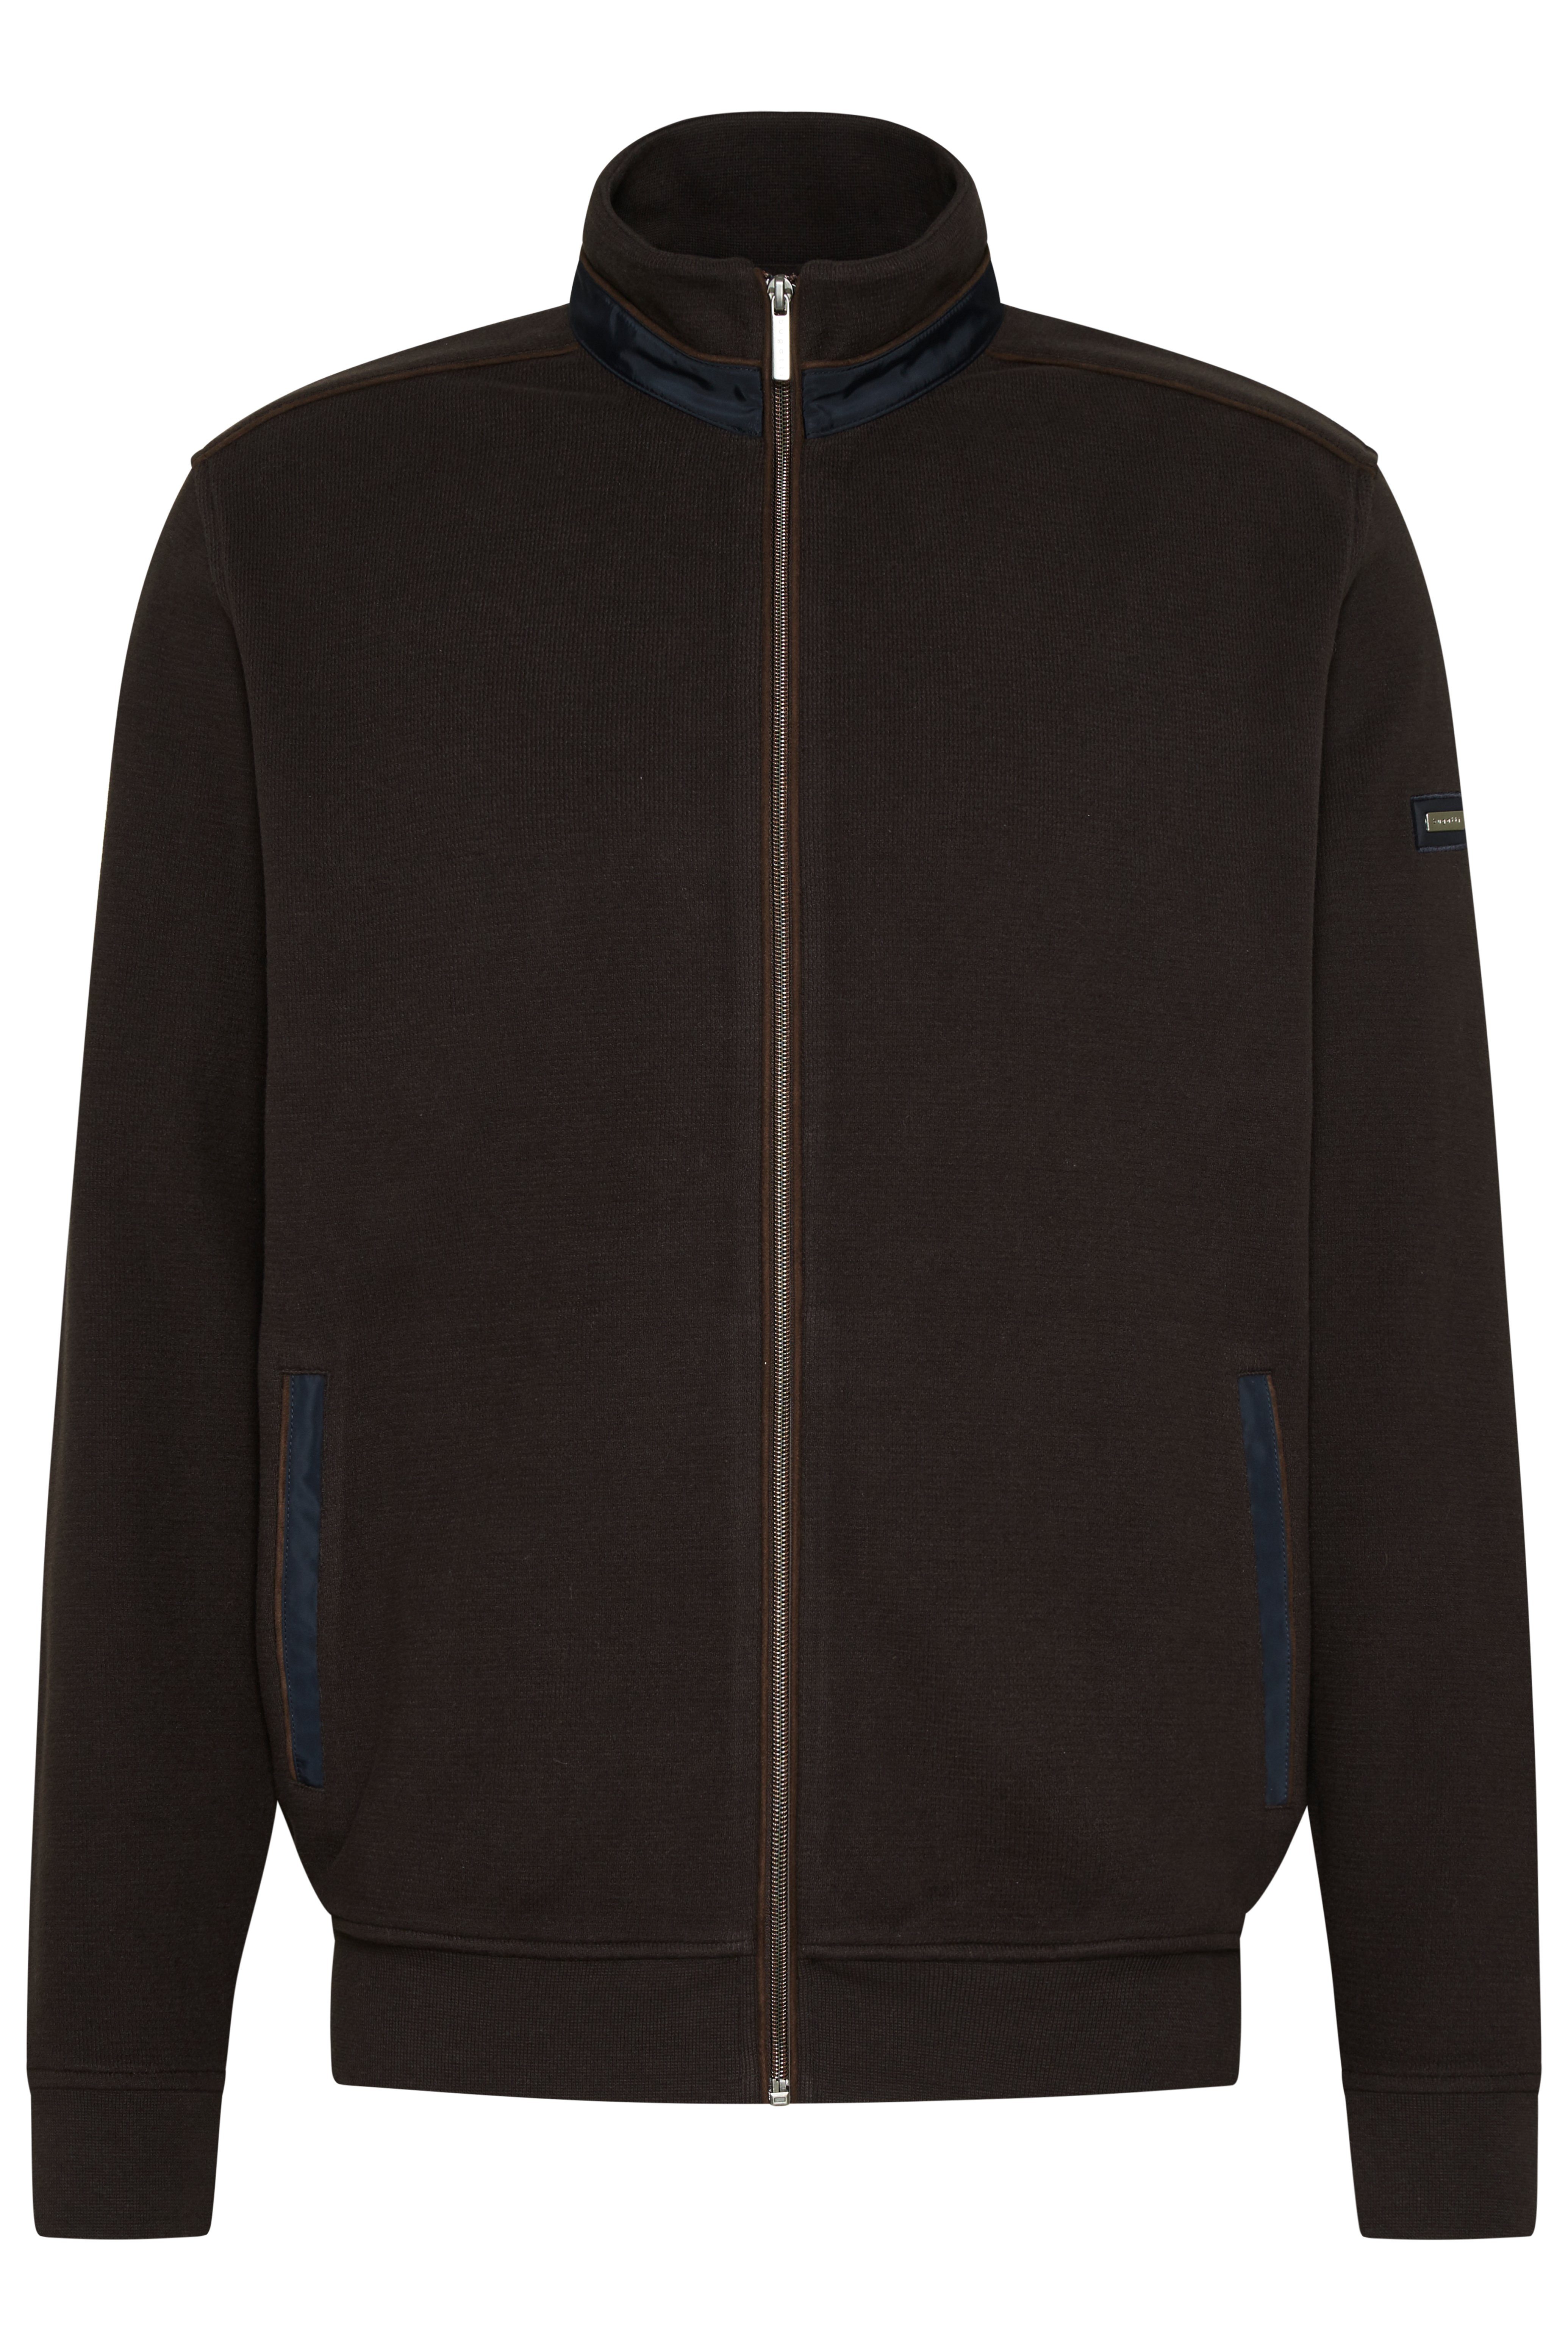 Sweater mit Micromadetails bugatti und braun Nylon-